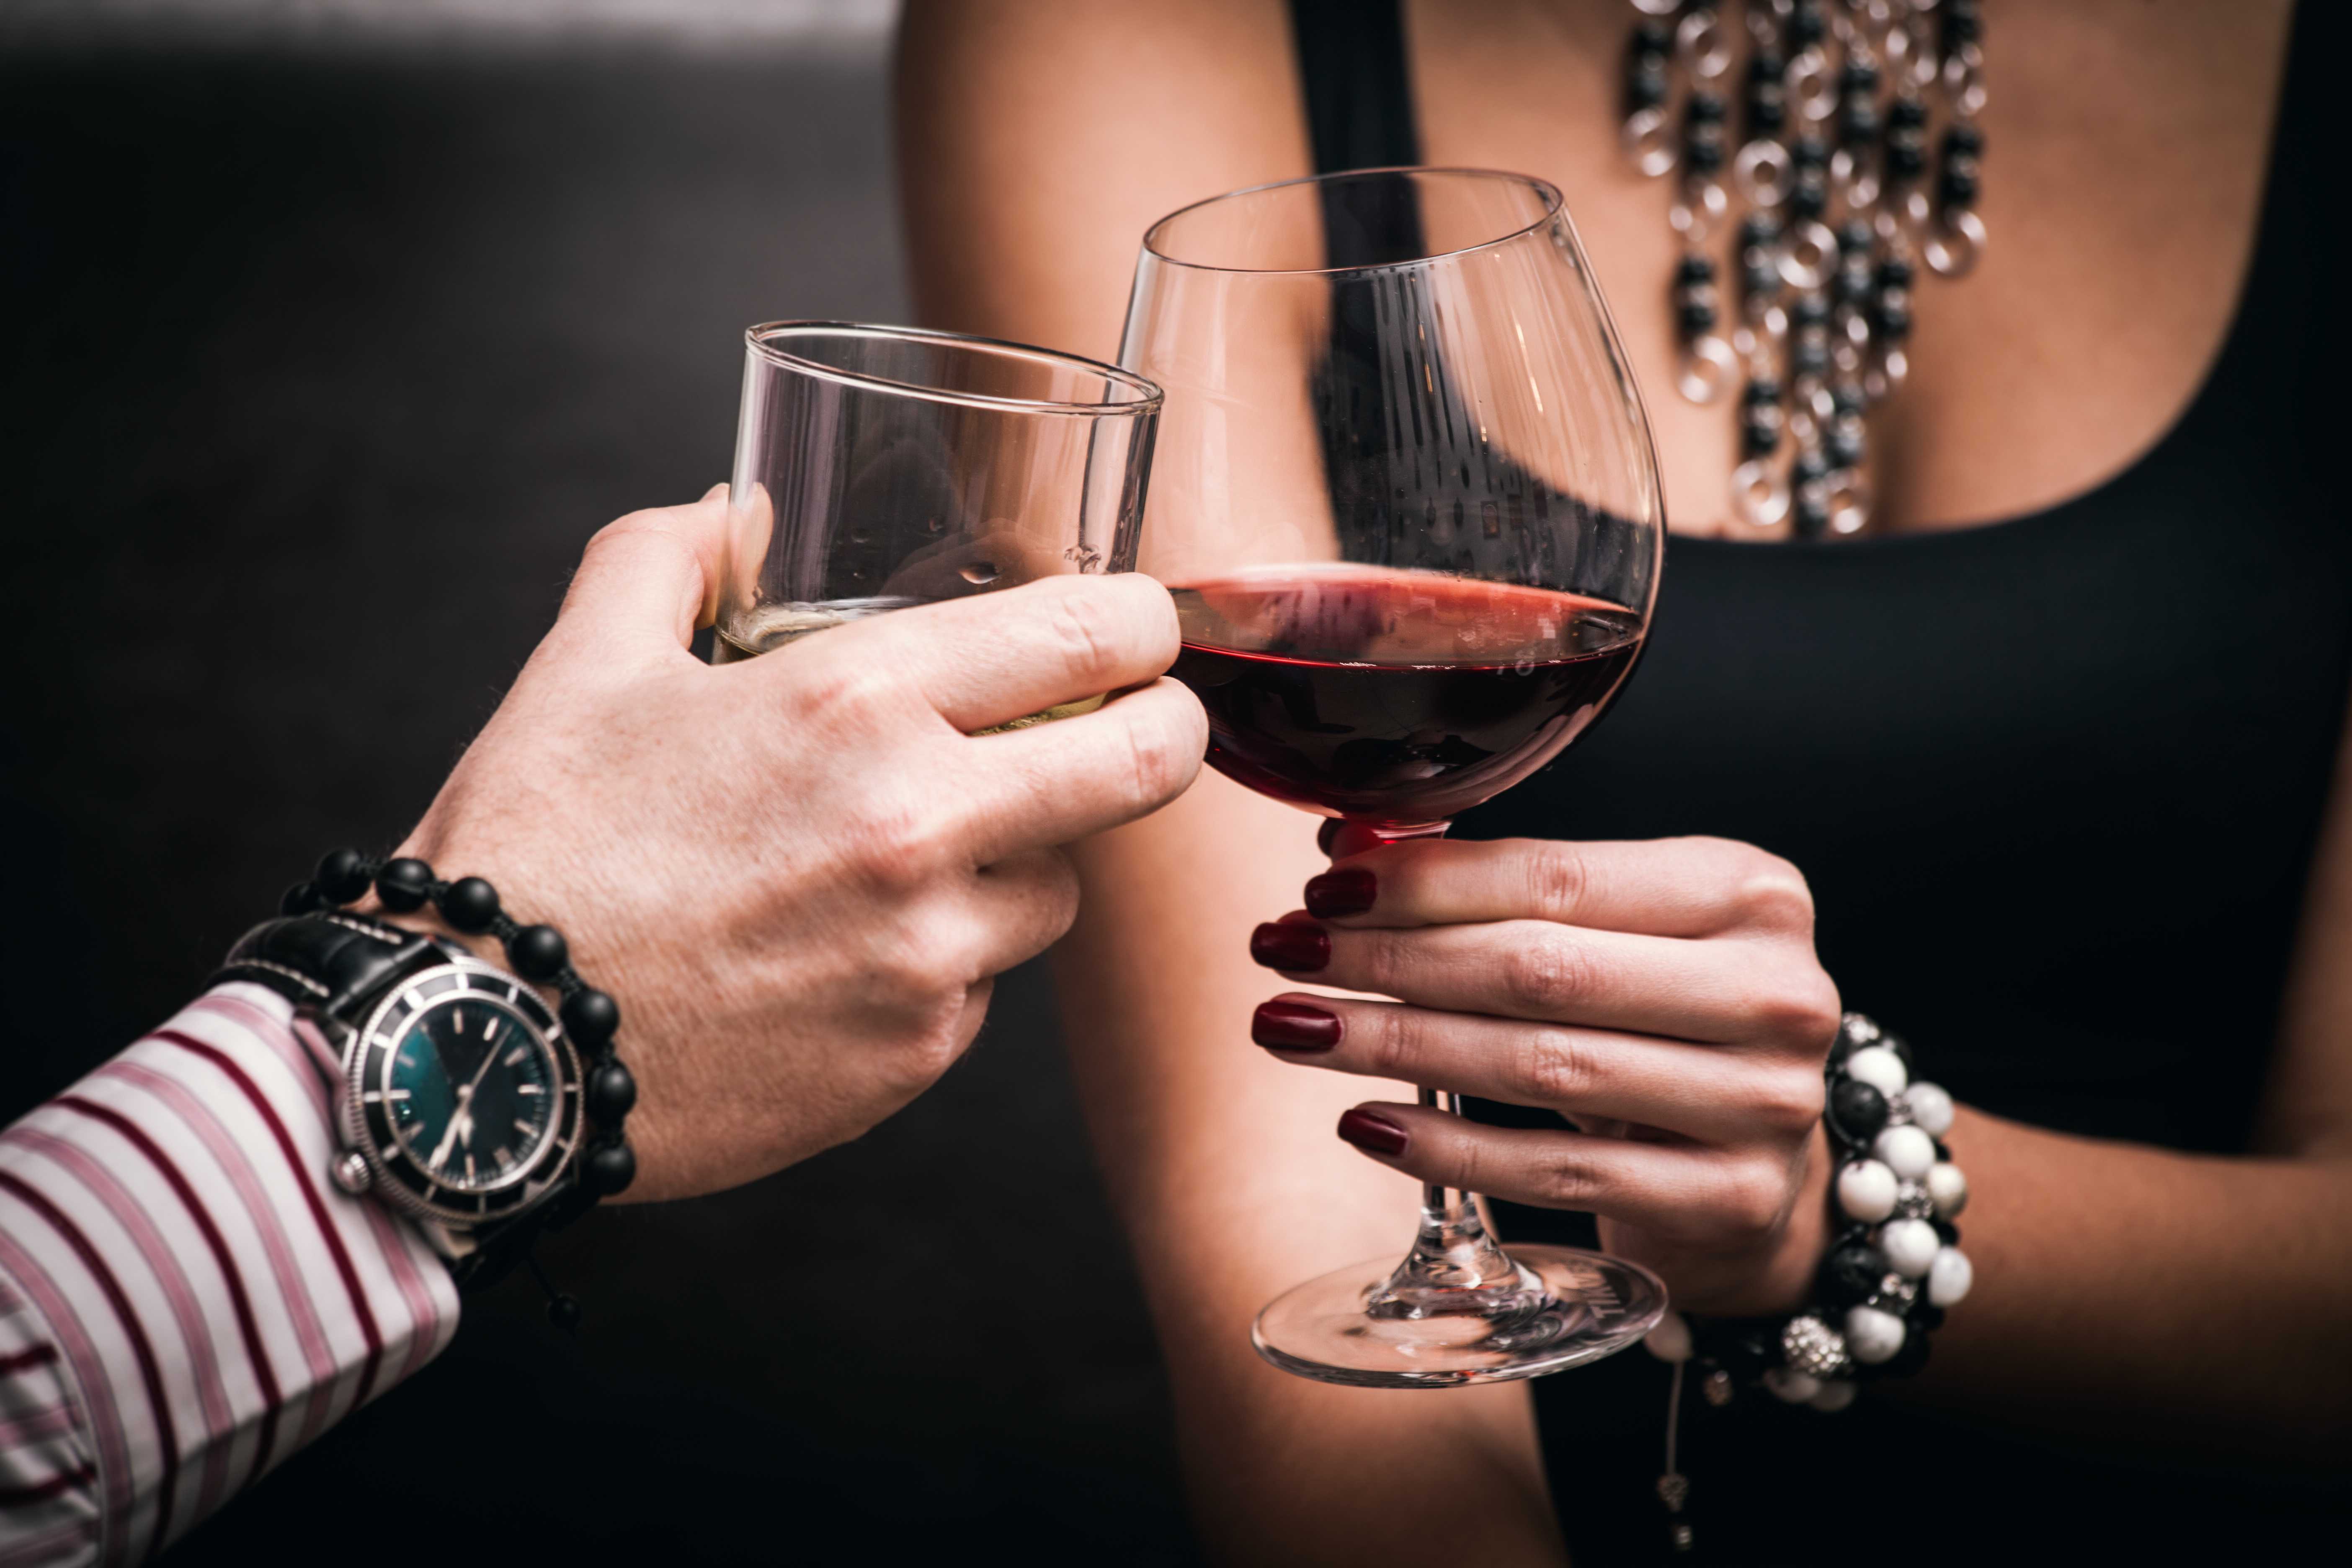 Как правильно держать бокал с вином по этикету за столом